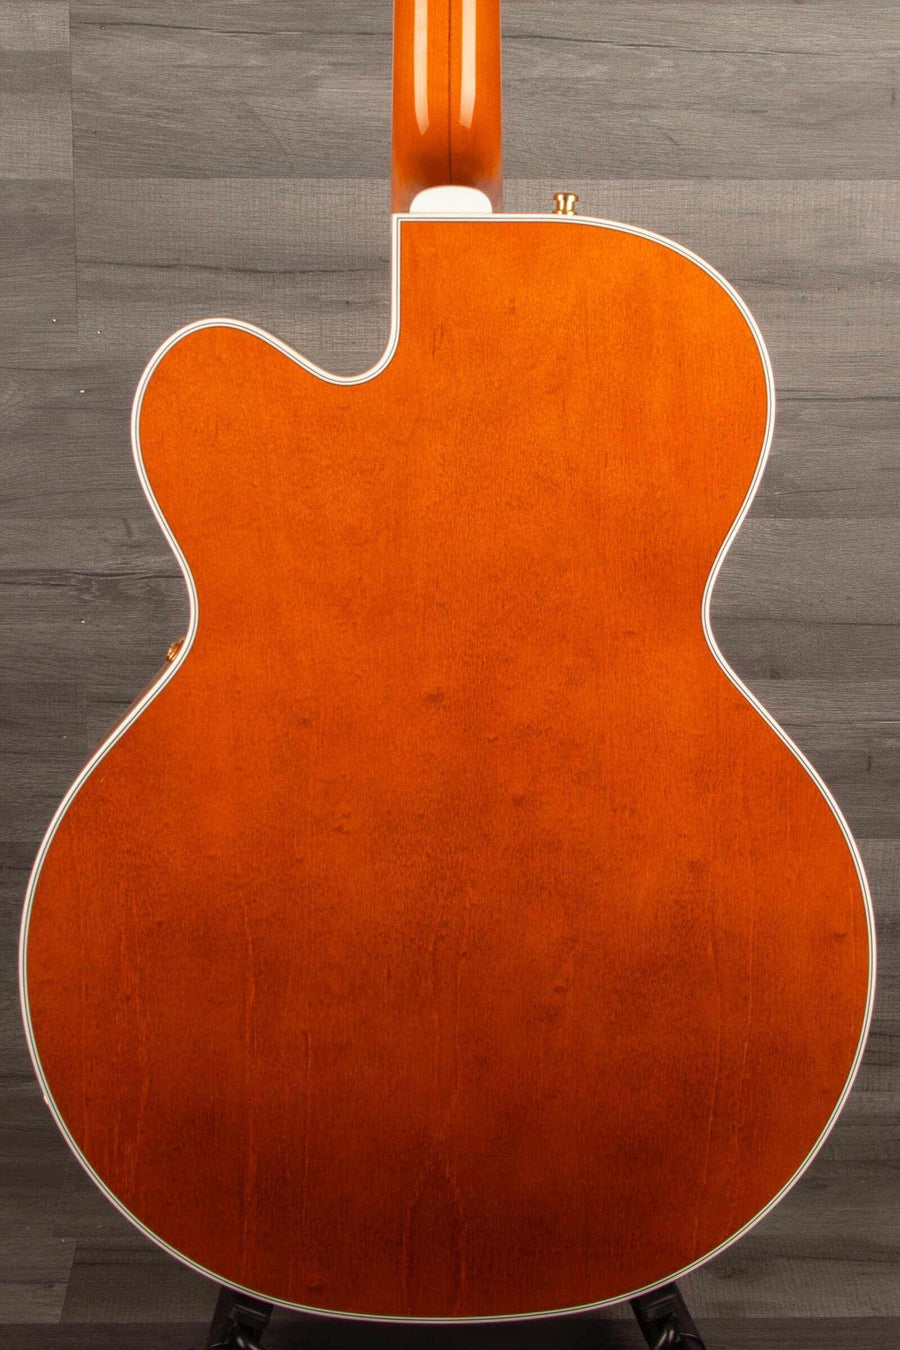 Gretsch - G6120TG Pro Player Edition Nashville Orange Stain